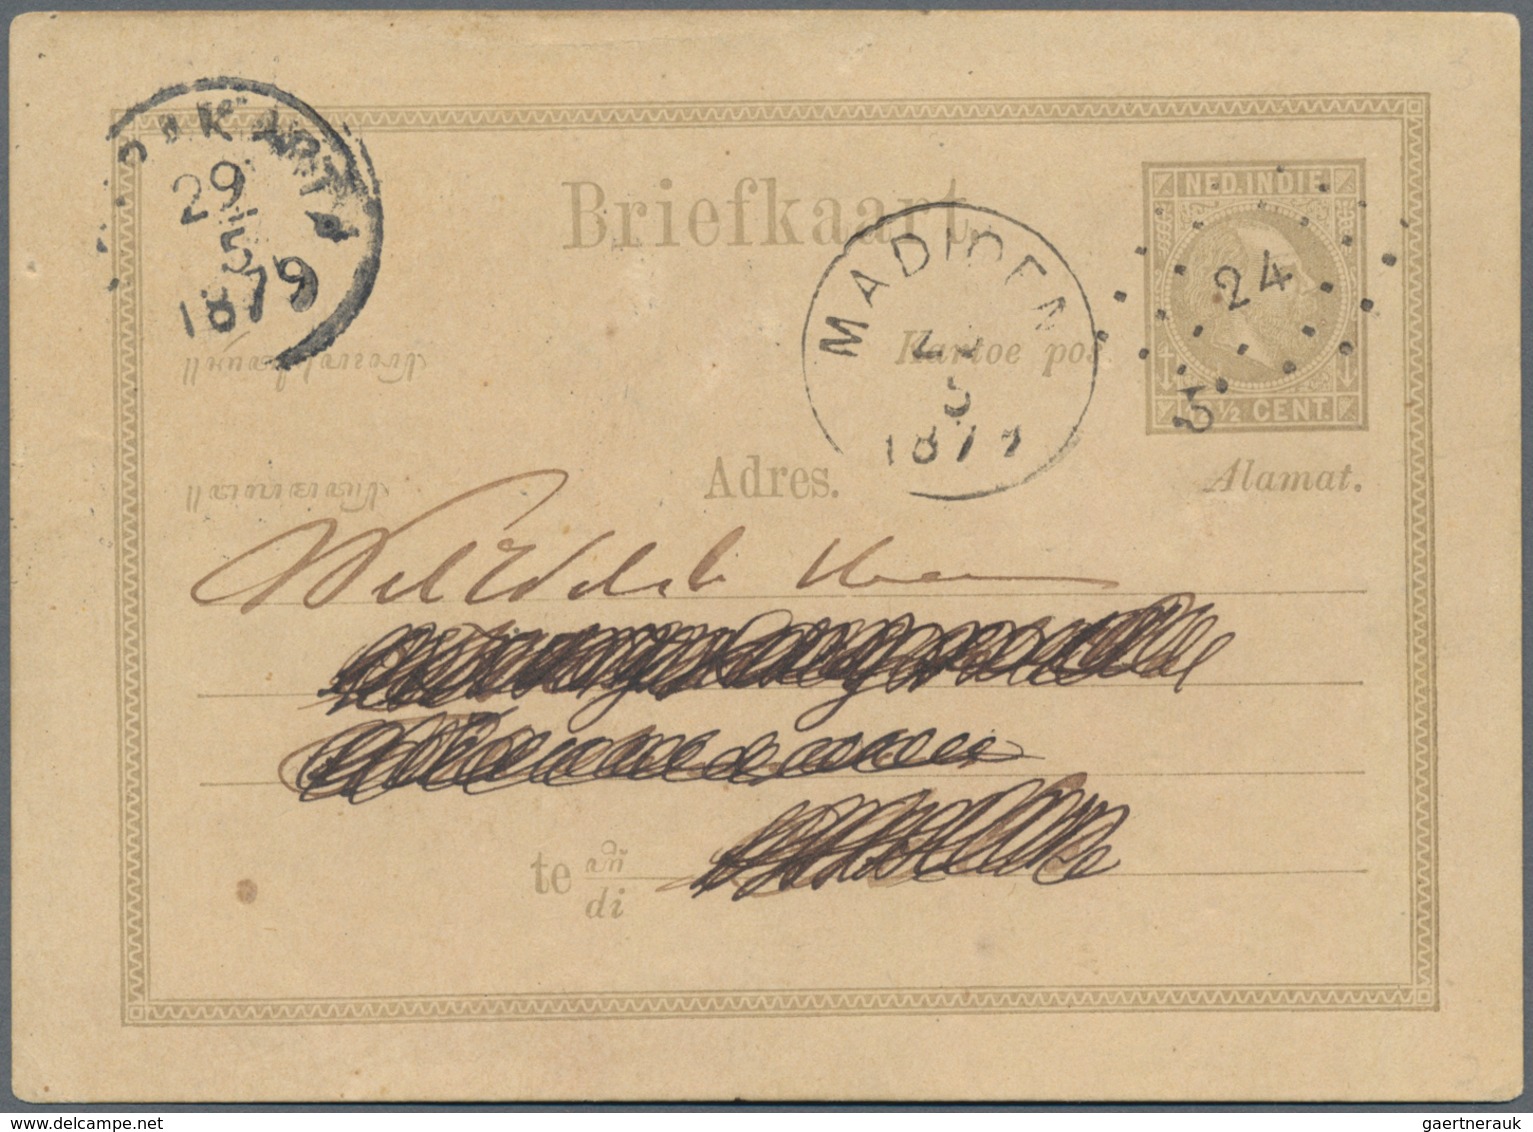 Niederländisch-Indien: 1877, Willem 5c On 12 1/2 C. Canc. Puntstempel "24" With "MADIOEN 28 5 1879" - Netherlands Indies